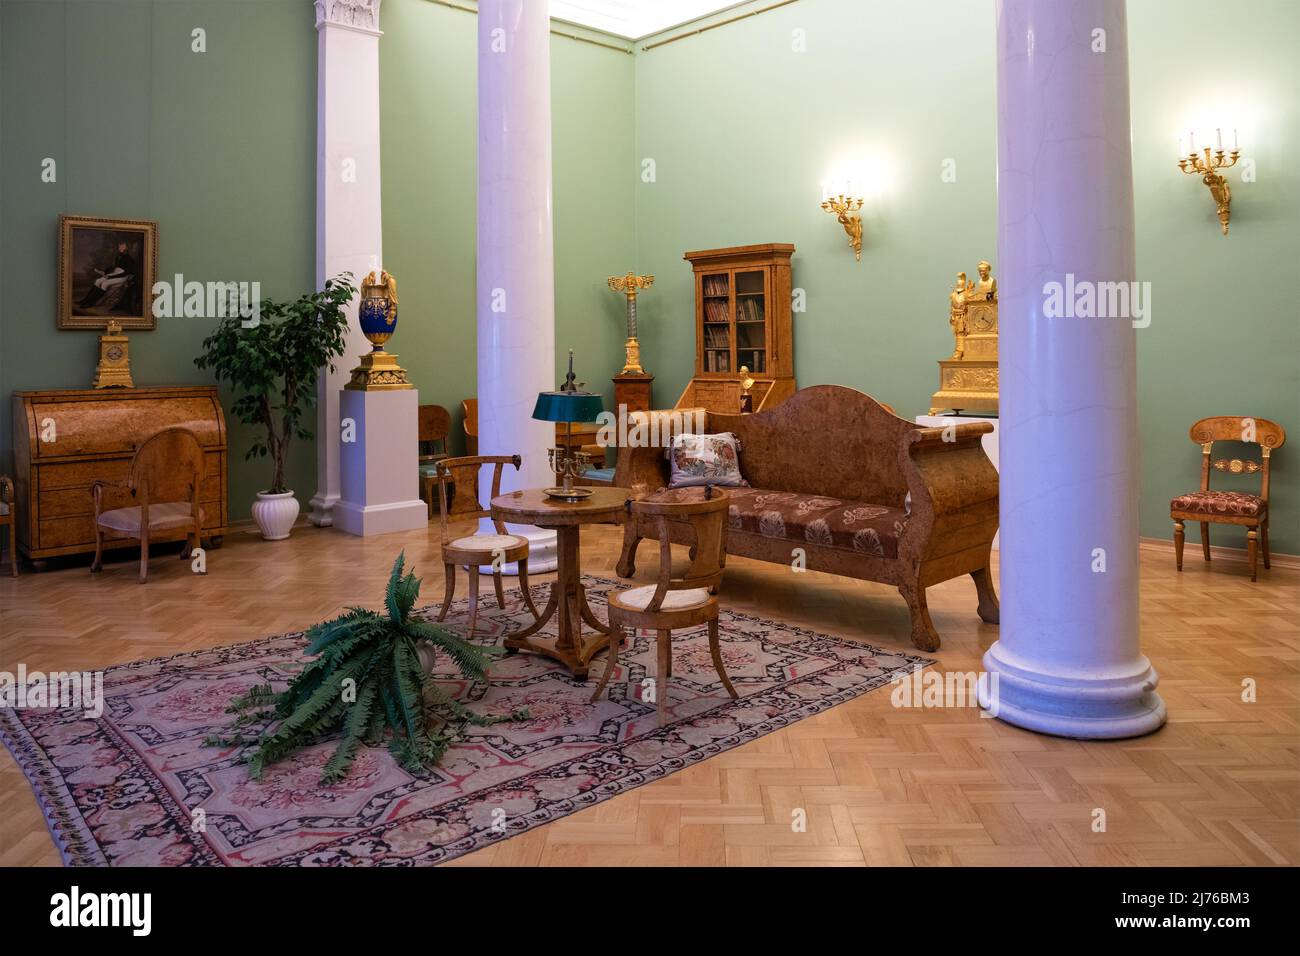 SAINT-PÉTERSBOURG, RUSSIE - 17 FÉVRIER 2022 : intérieur d'une salle de dessin classique d'une maison noble de la fin du 18th siècle. Exposition de l'Ermitage d'État Banque D'Images